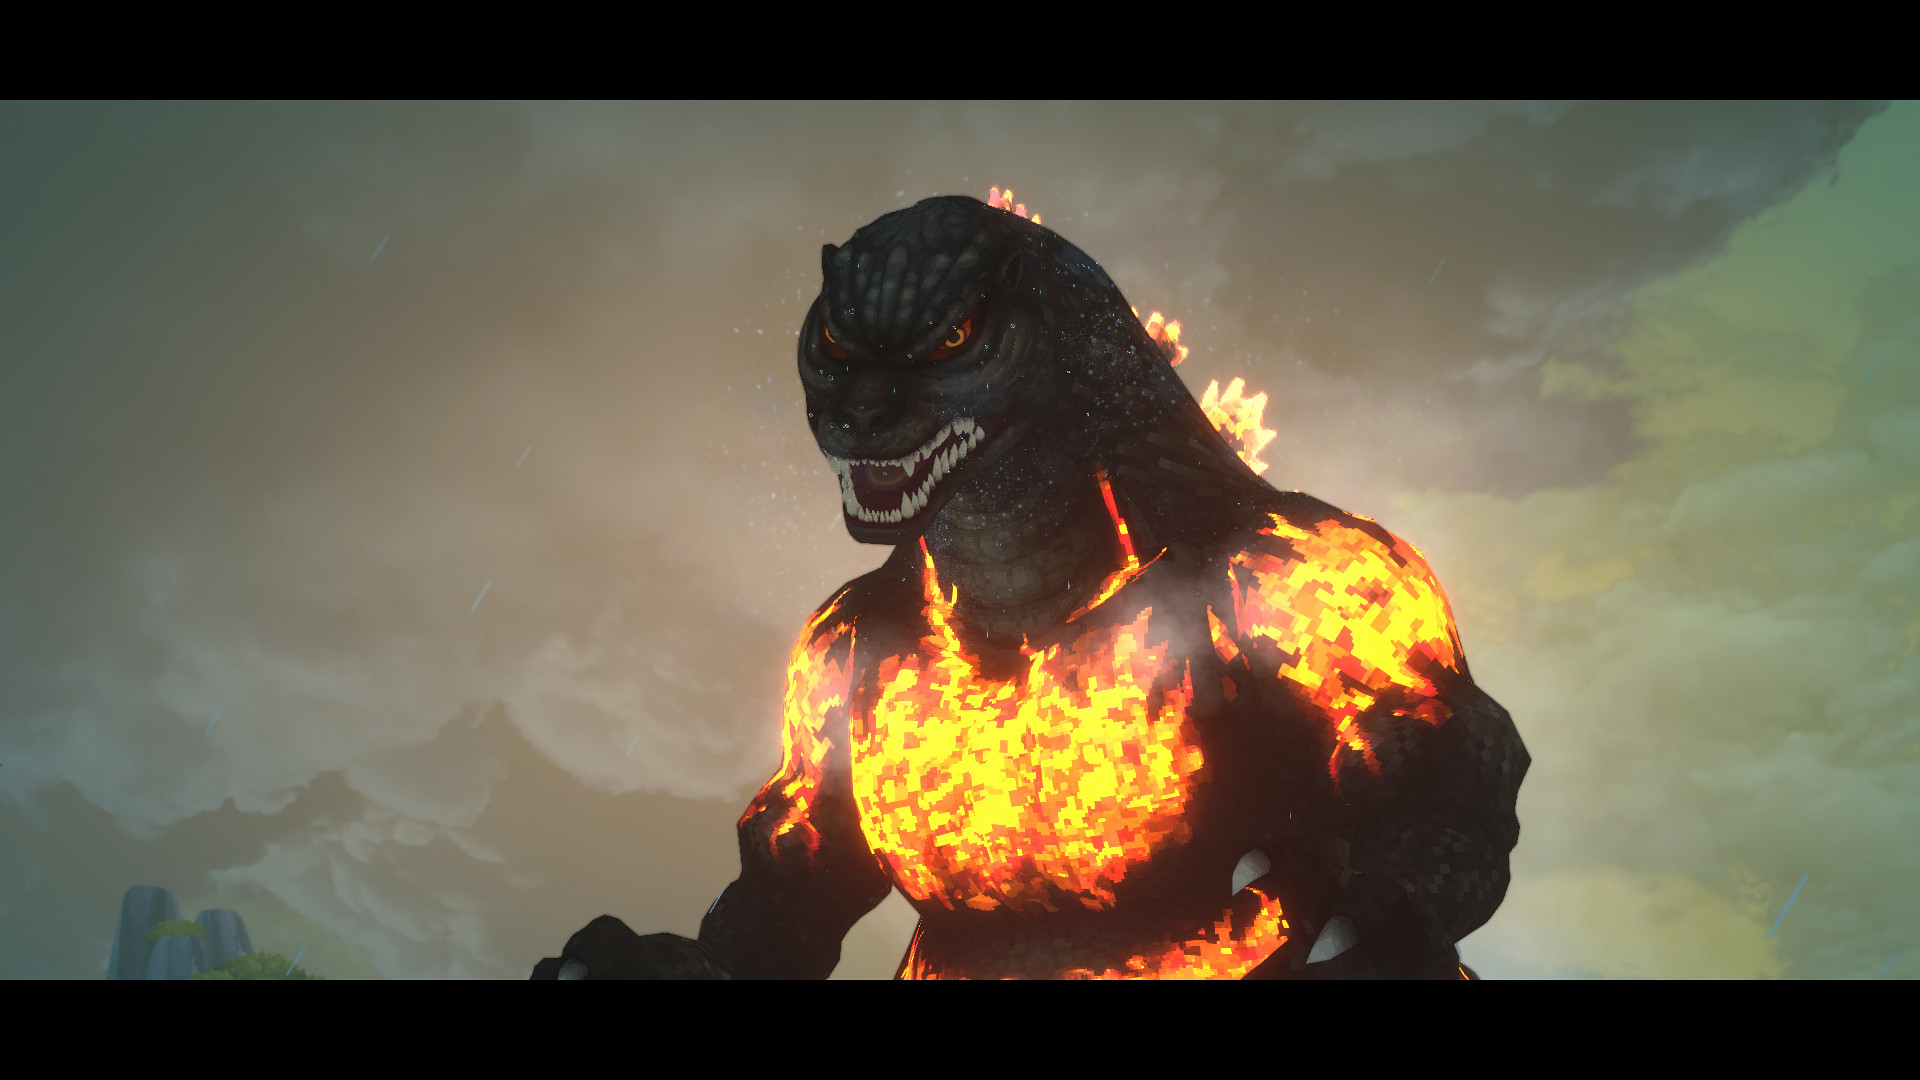 Um close do Godzilla, que aparentemente olha malevolamente para o espectador. Suas costas e espinhas brilham em vermelho fogo.